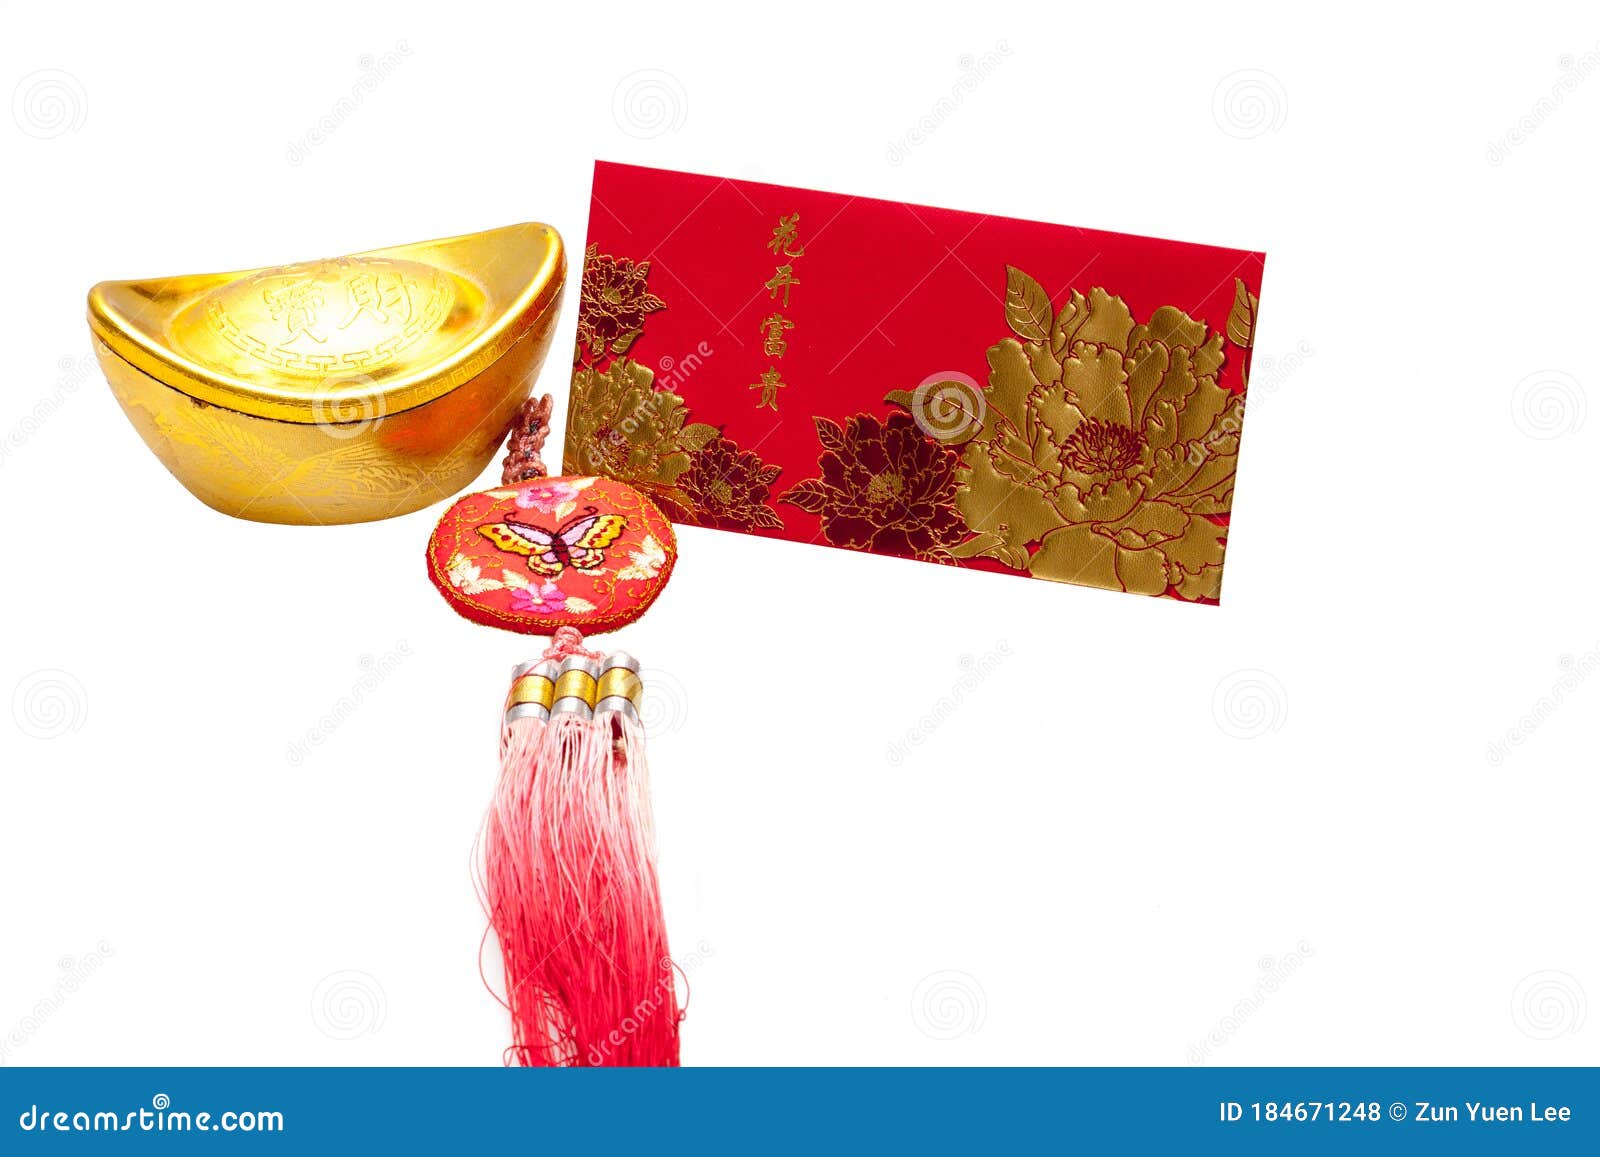 红兜里有马来西亚元 美元 印尼盾库存照片 图片包括有问候 祝福 对象 装饰品 香港 运气